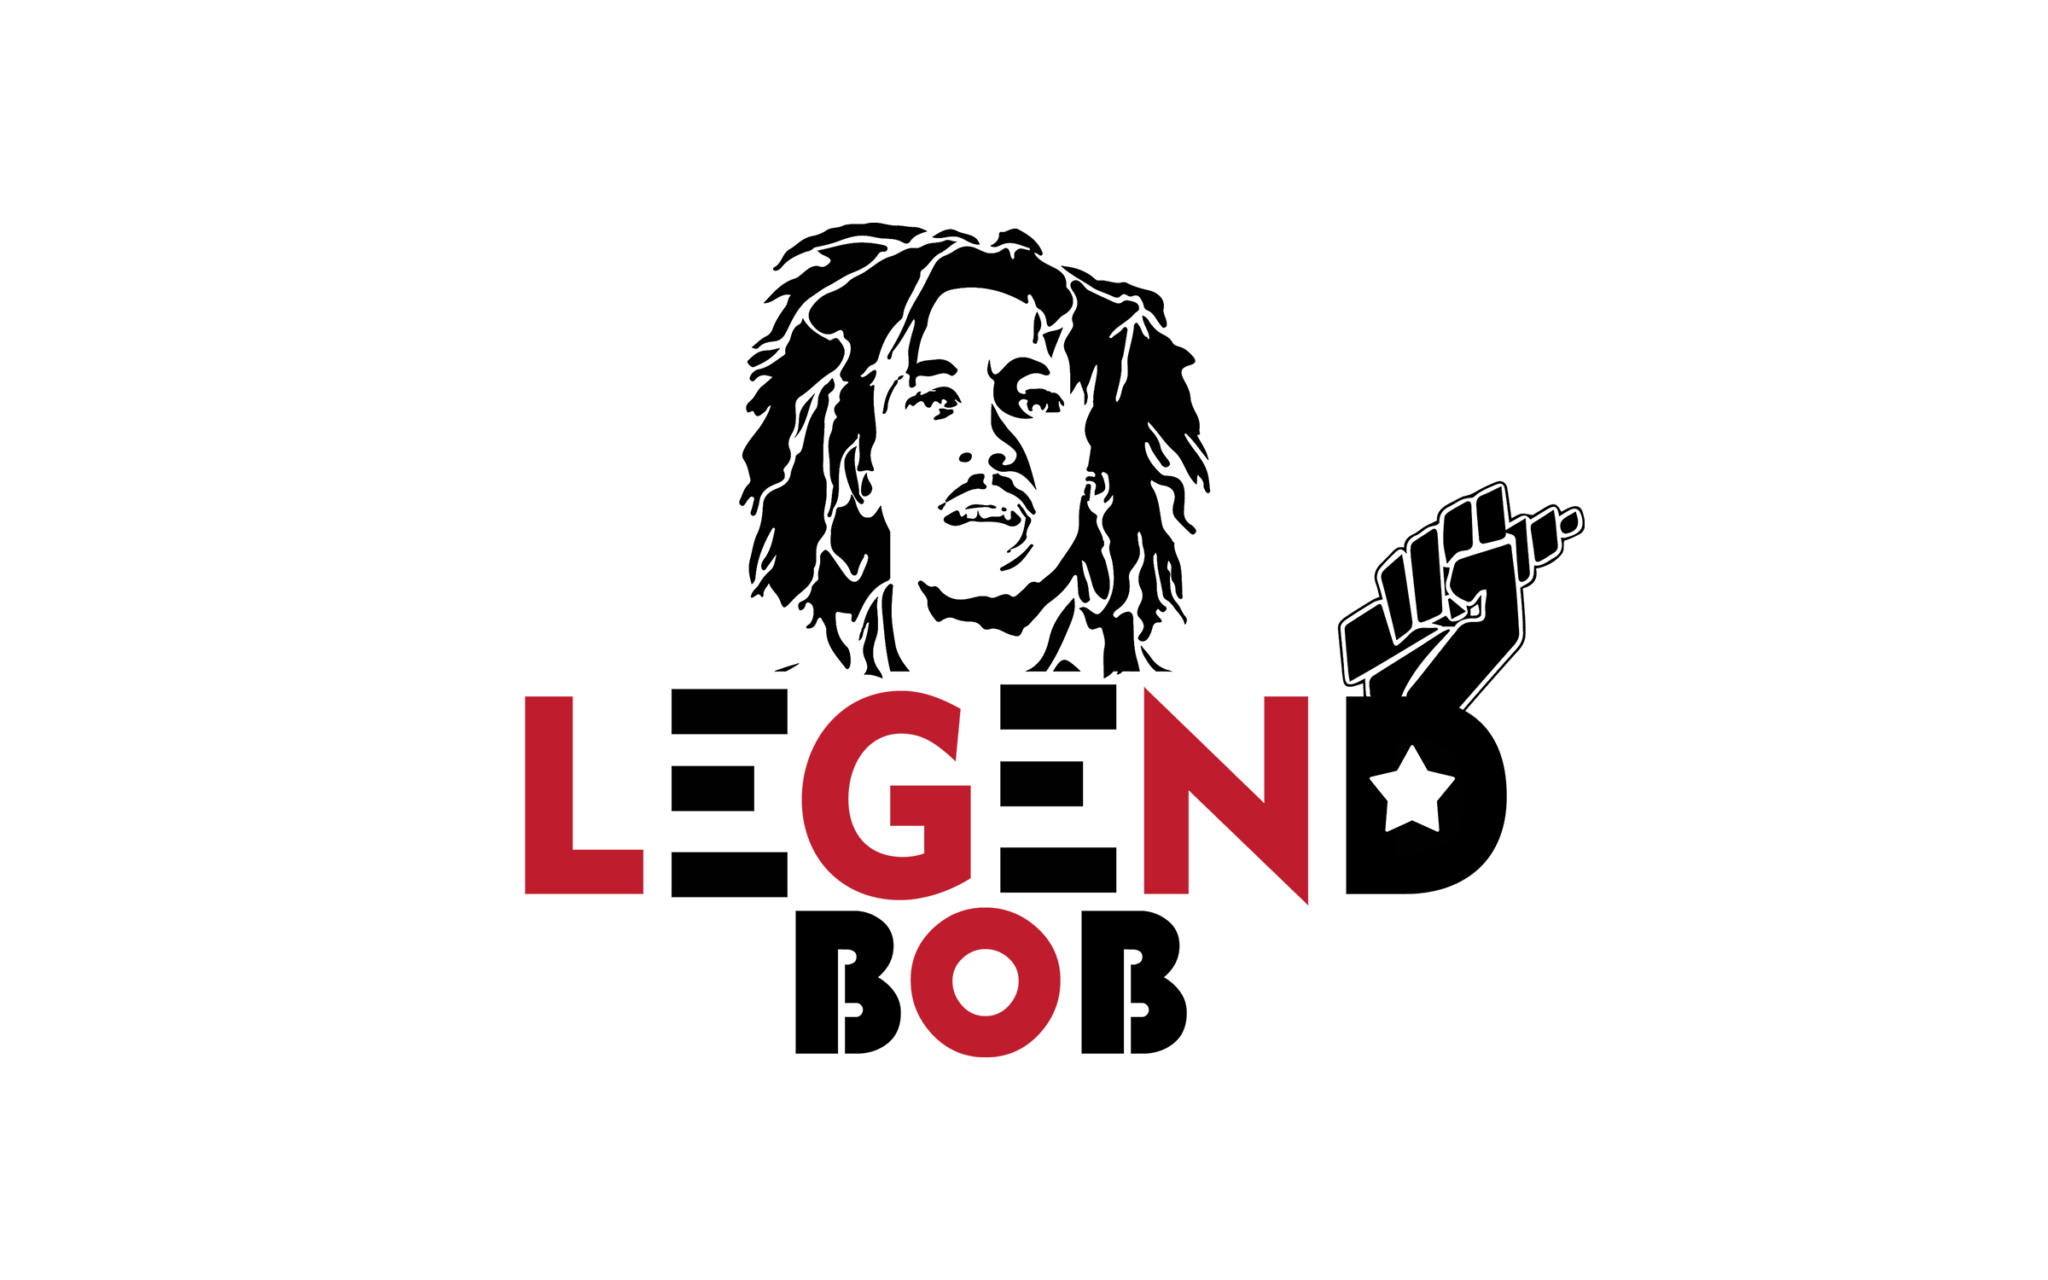 14.Legend Bob